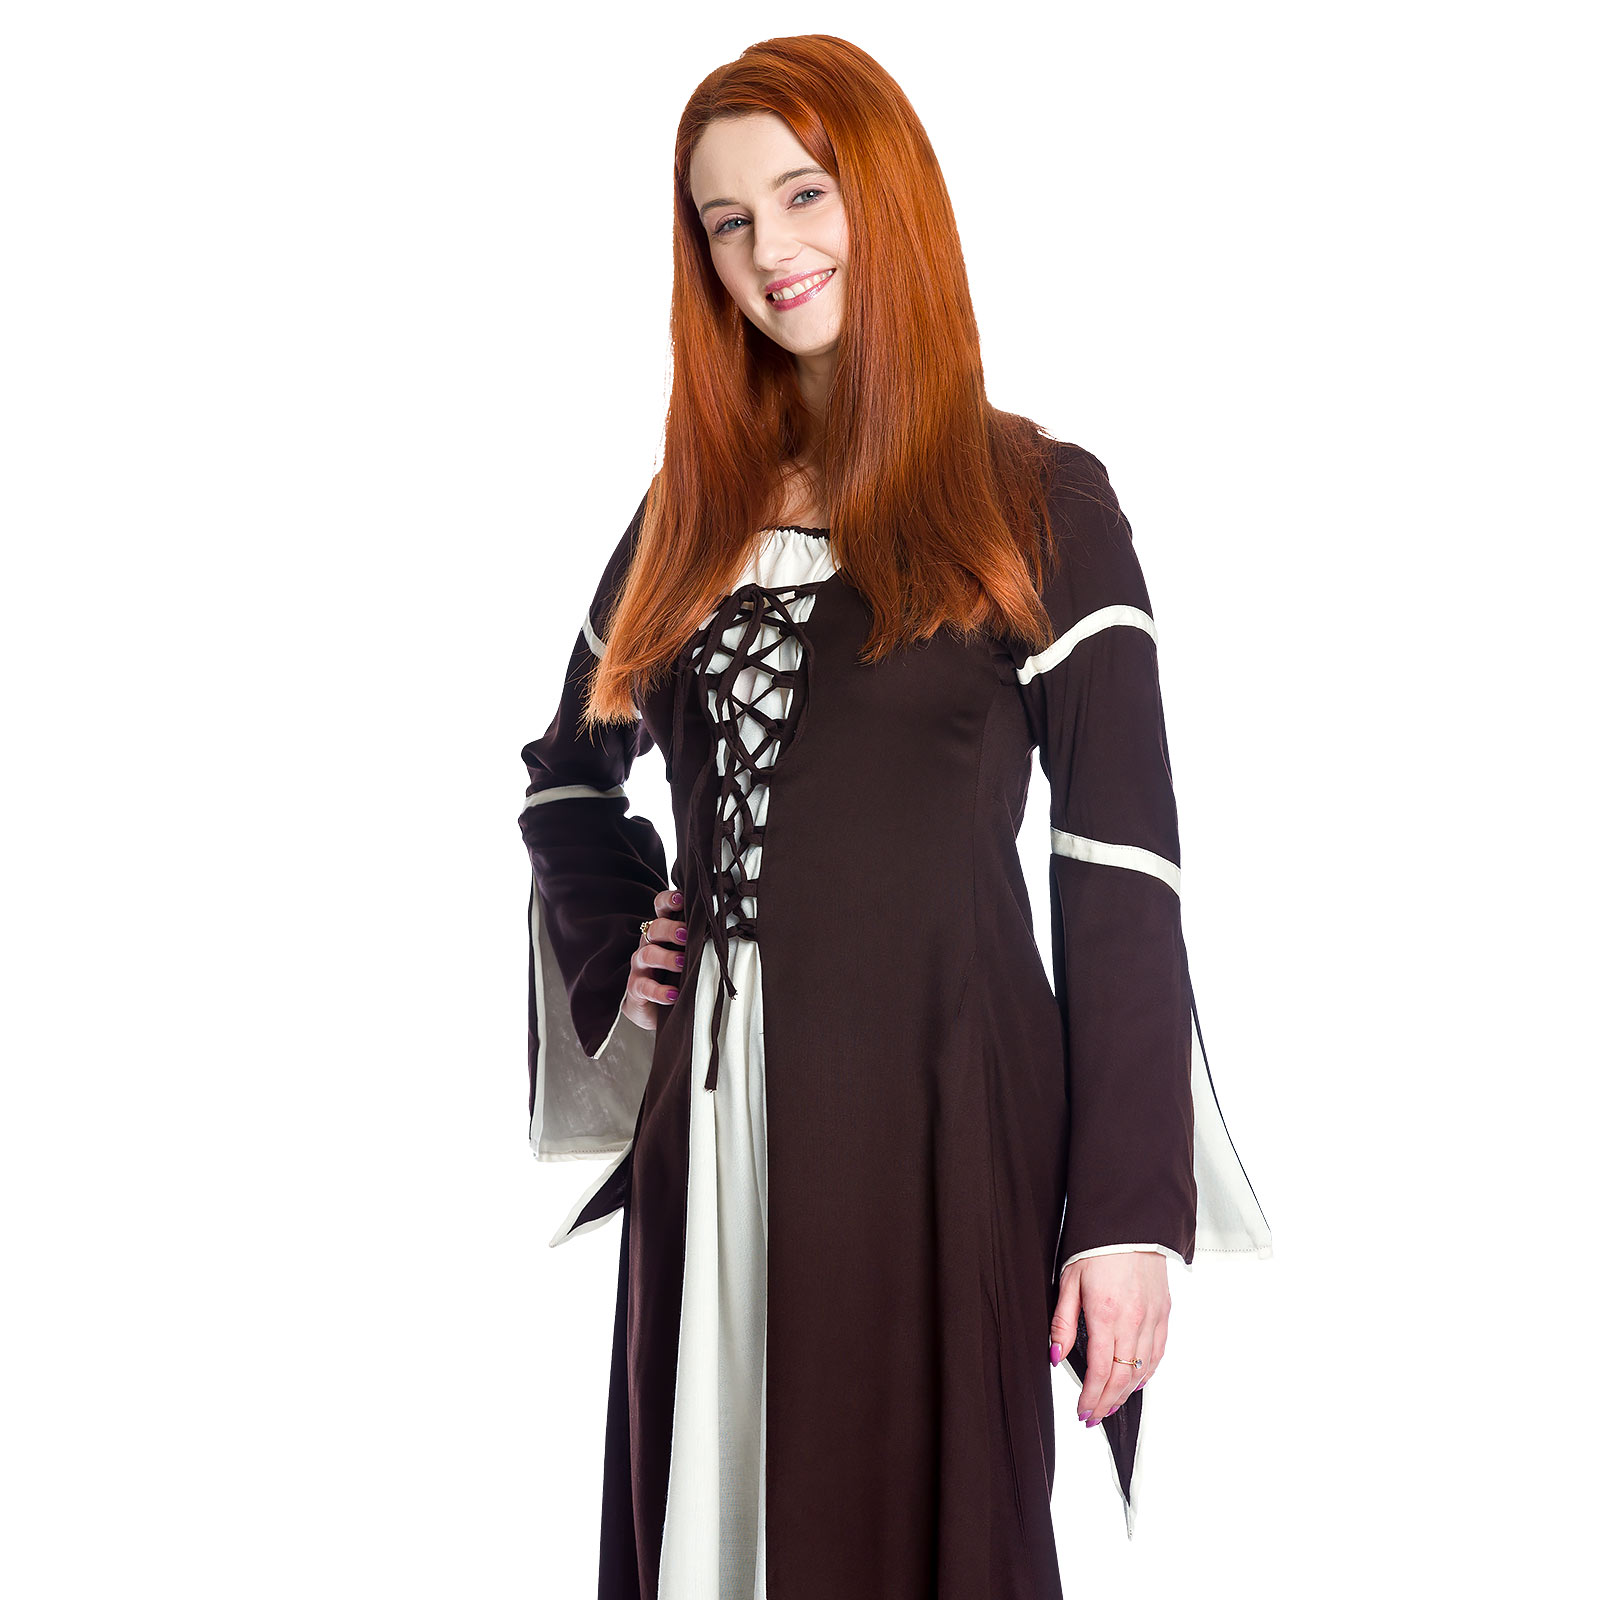 Middeleeuwse jurk Katherina bruin-natuur